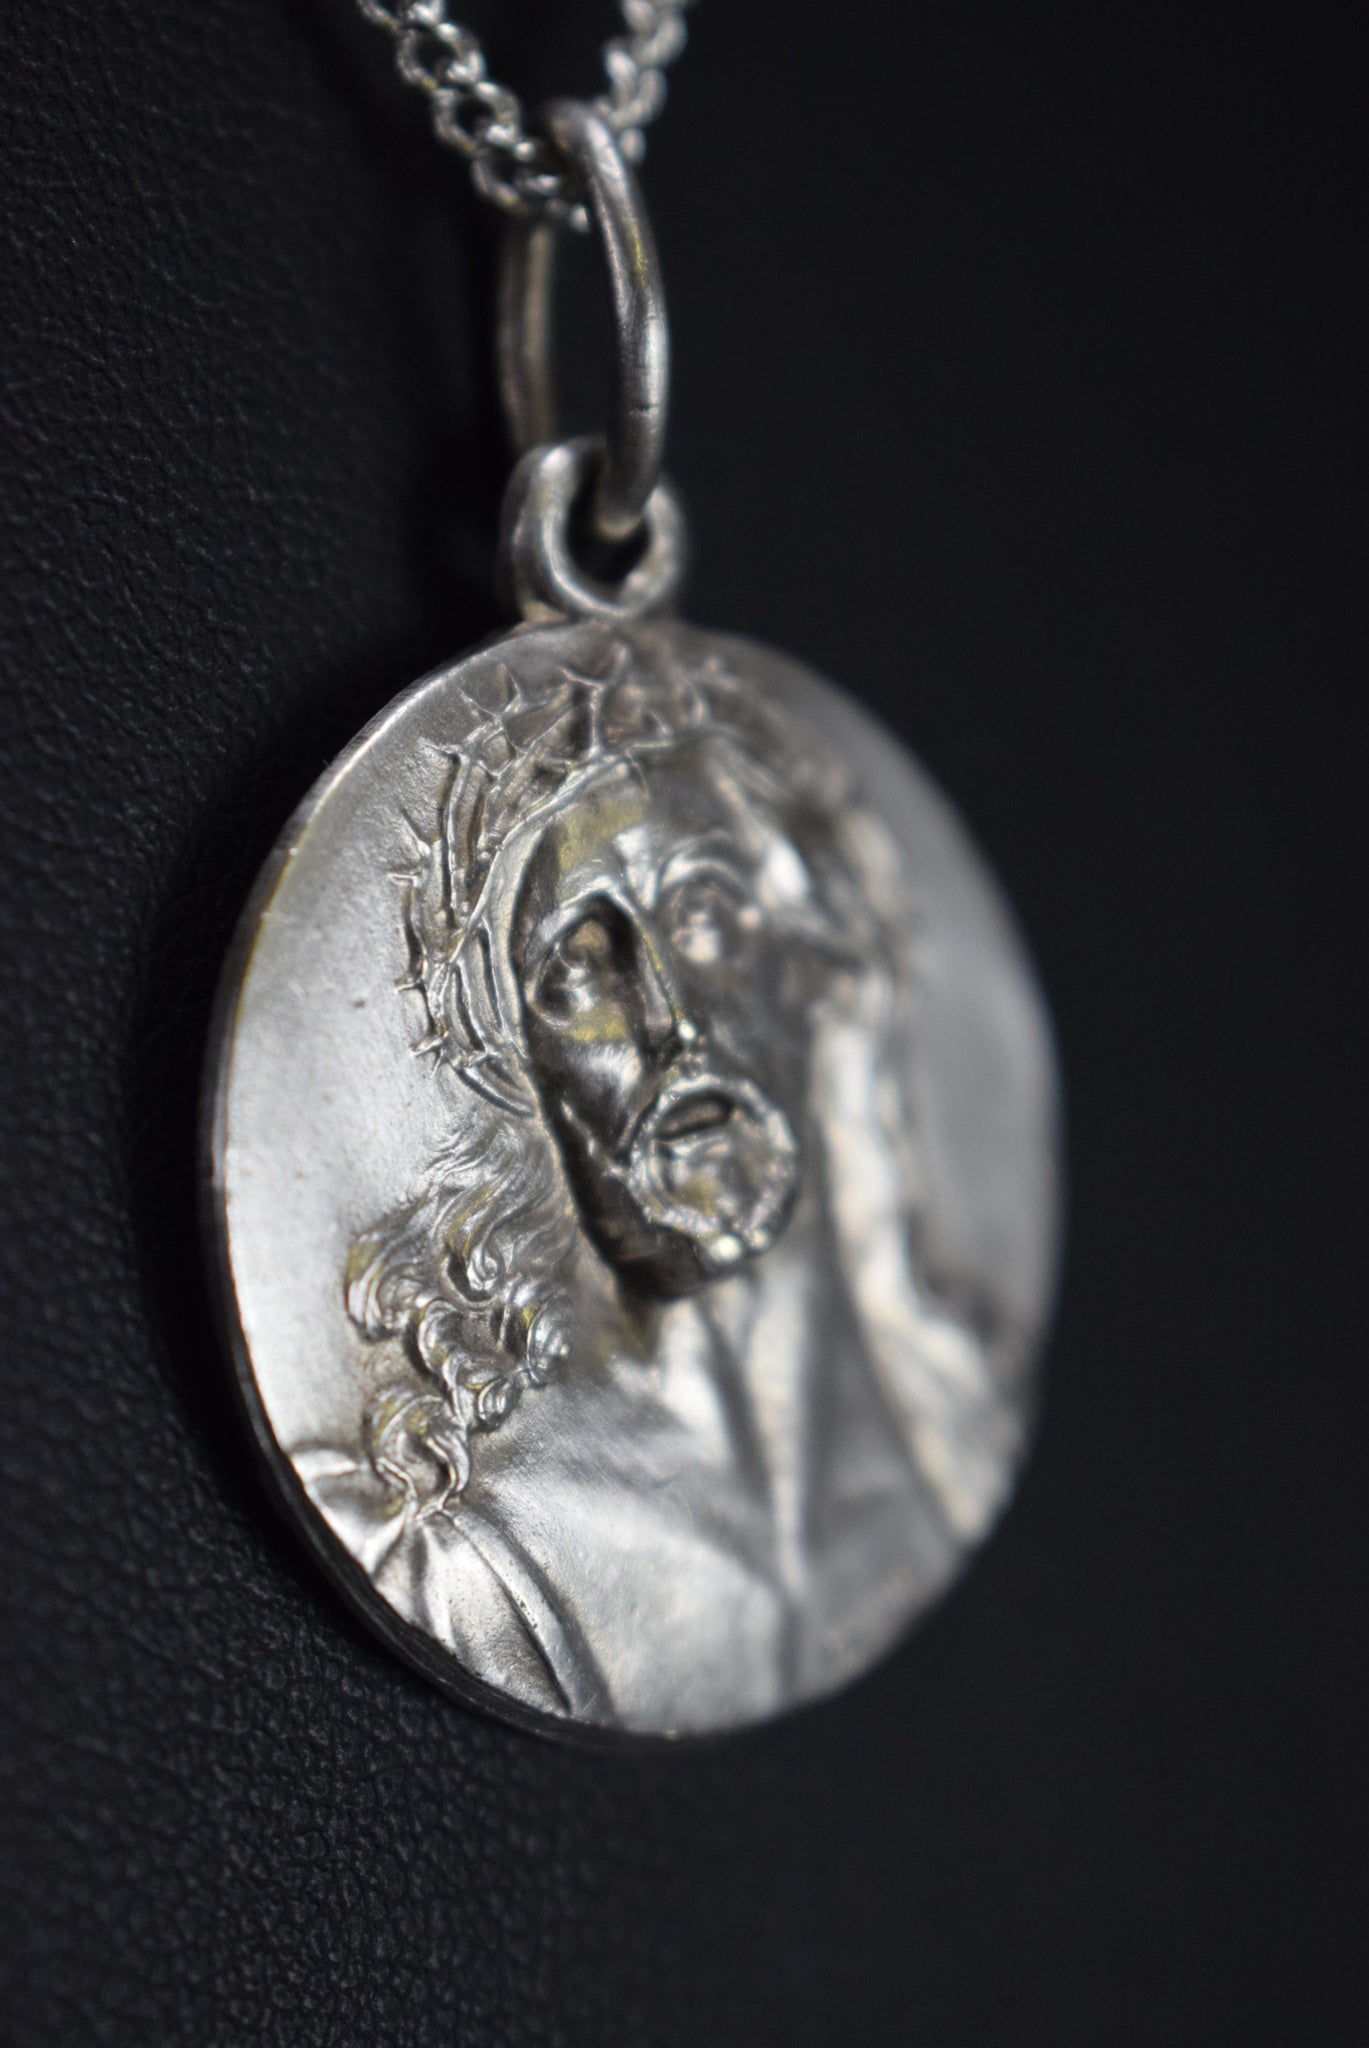 Jesus Christ Medal Pendant Vintage French